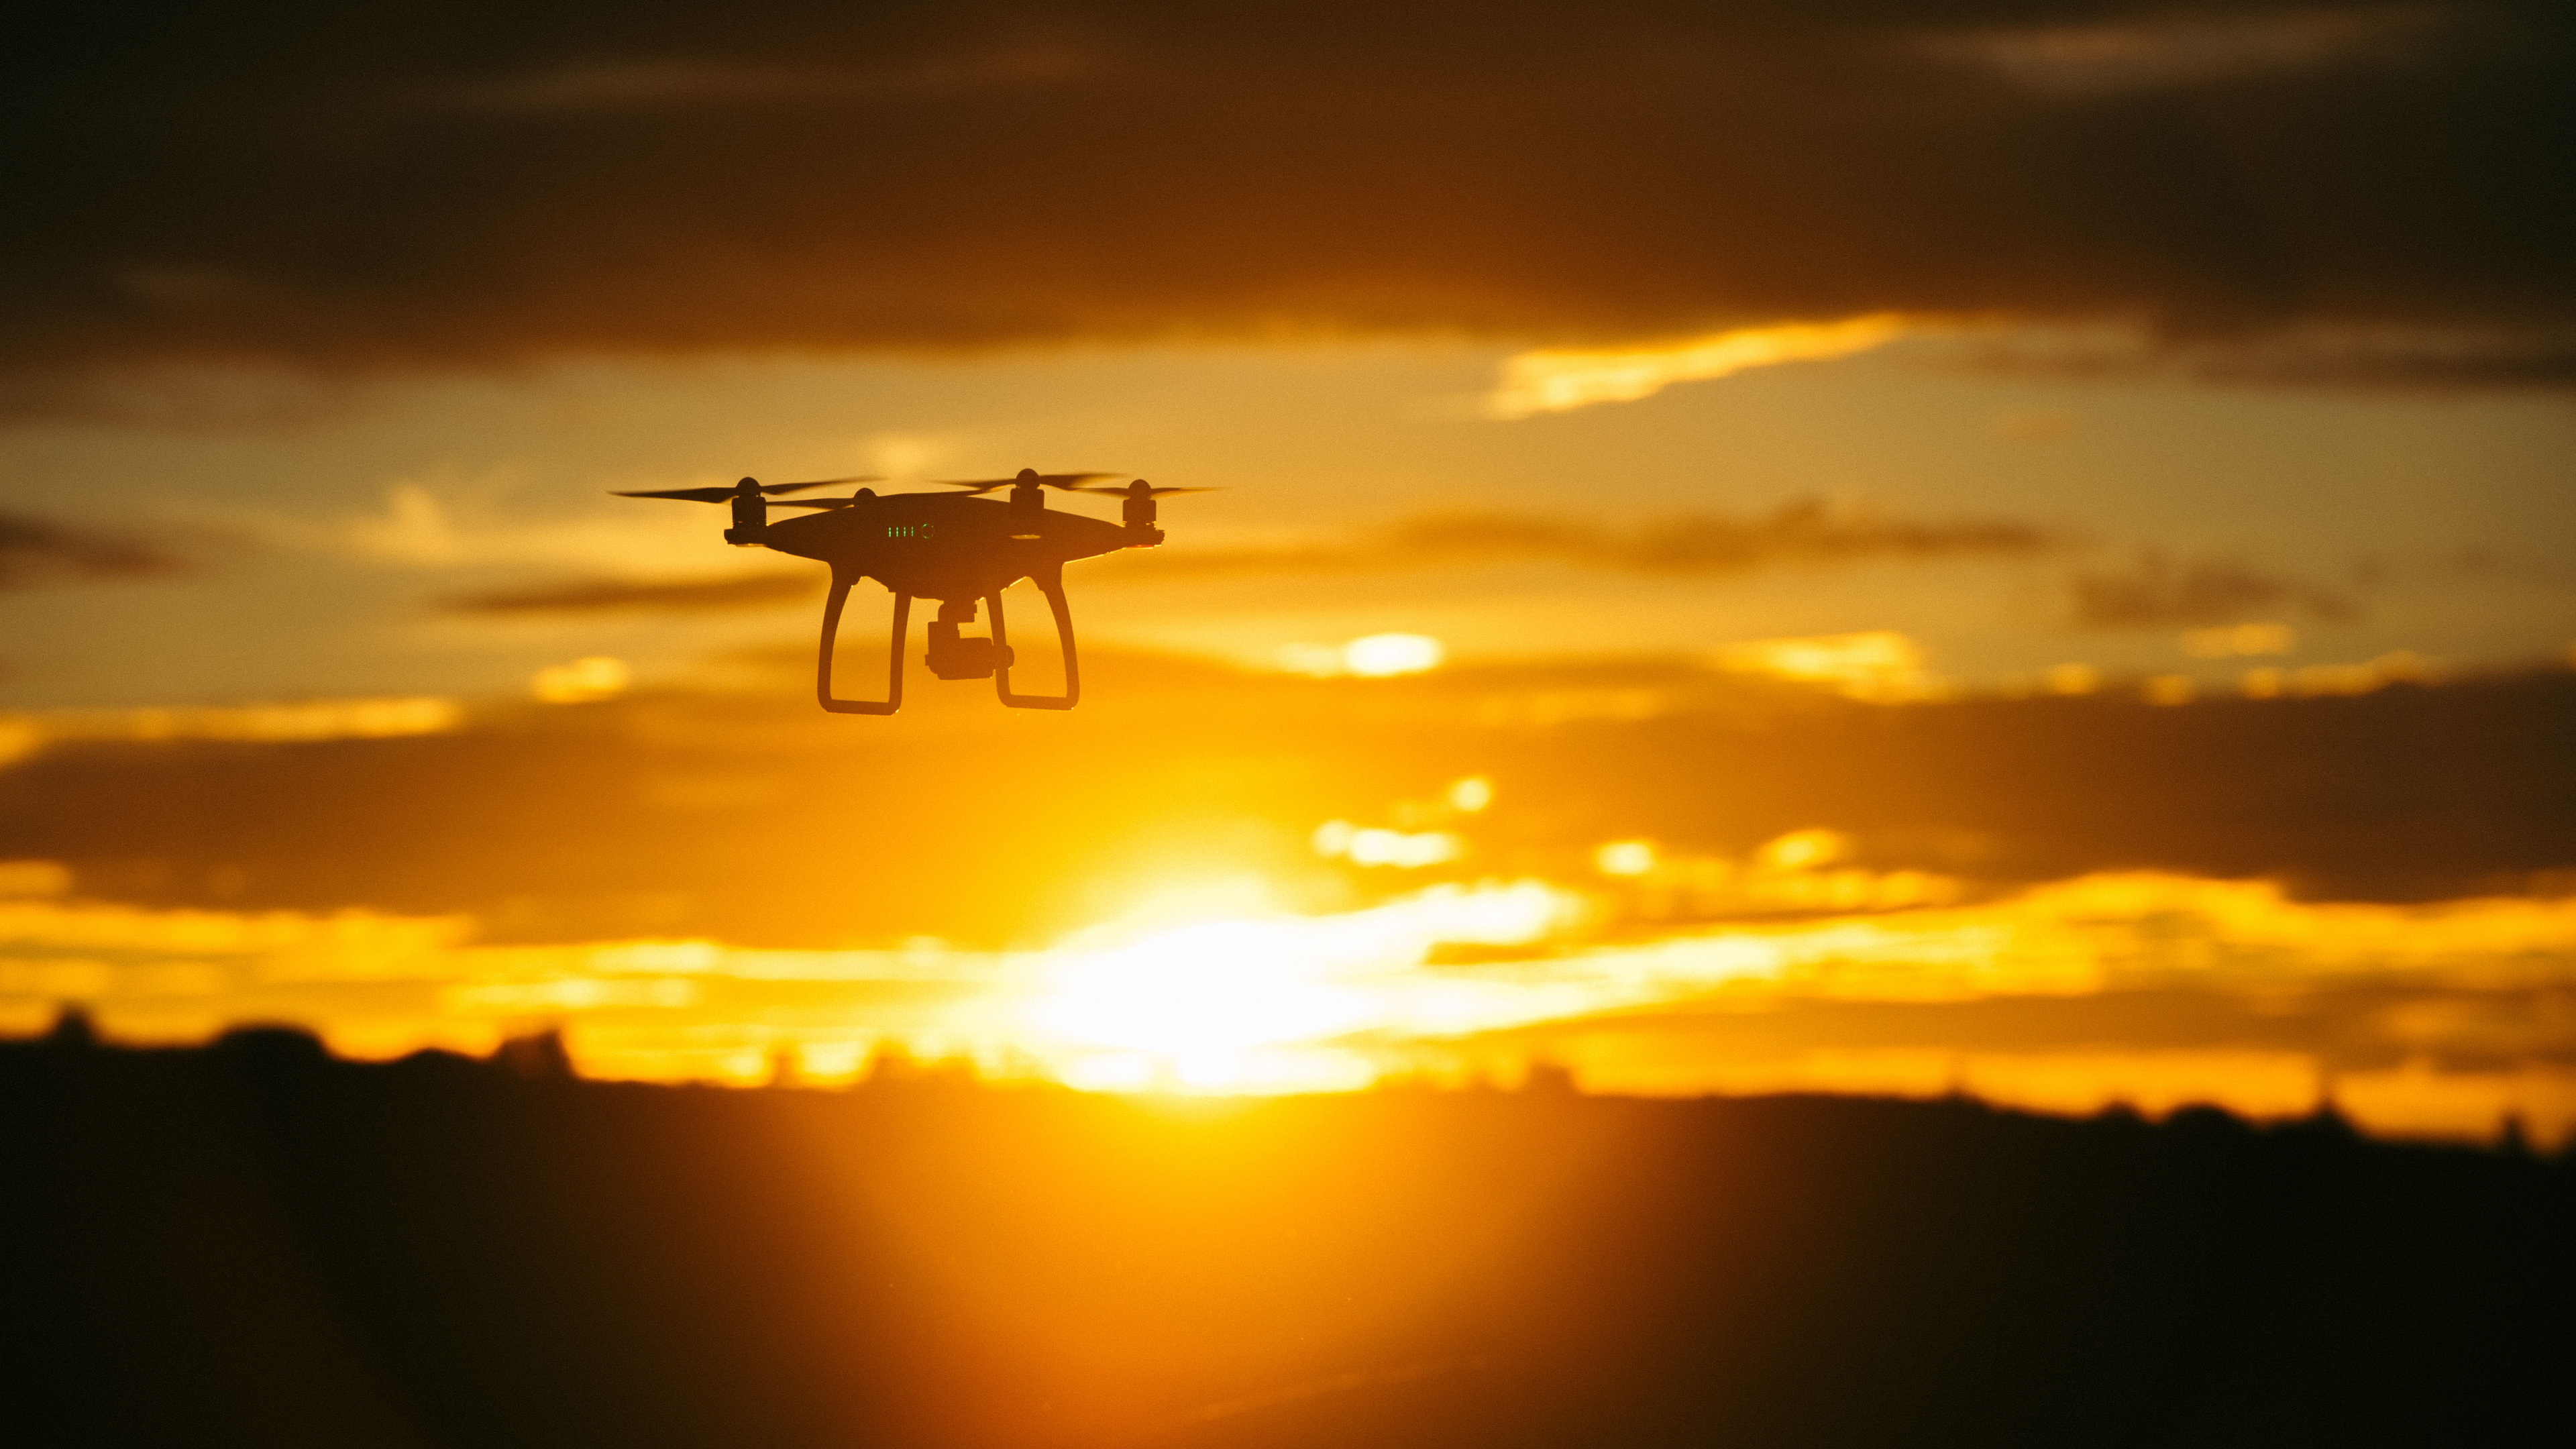 Drone Blanco Volando Durante la Puesta de Sol. Wallpaper in 3840x2160 Resolution